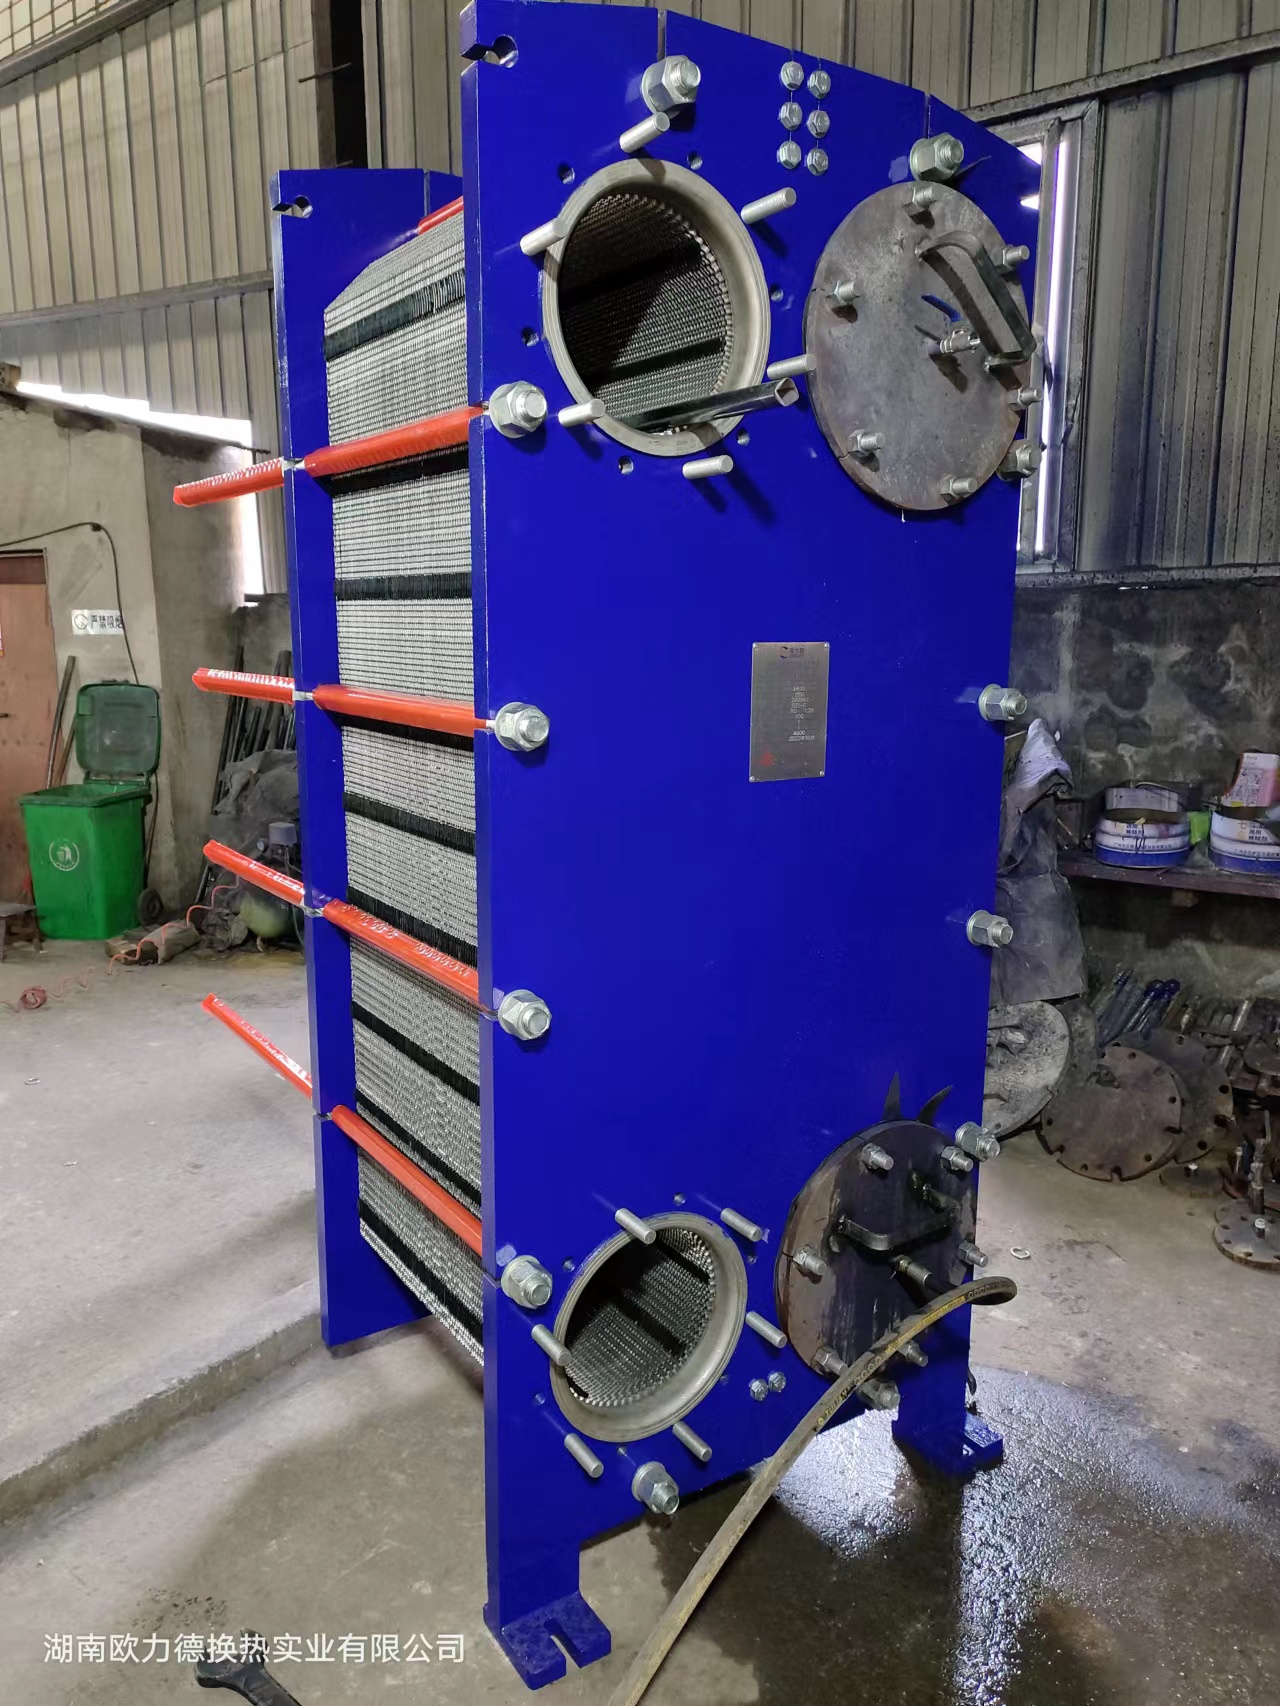 湖南株洲长沙湘潭板式换热器 板式冷却器 板式加热器 冷凝器 换热设备生产厂家